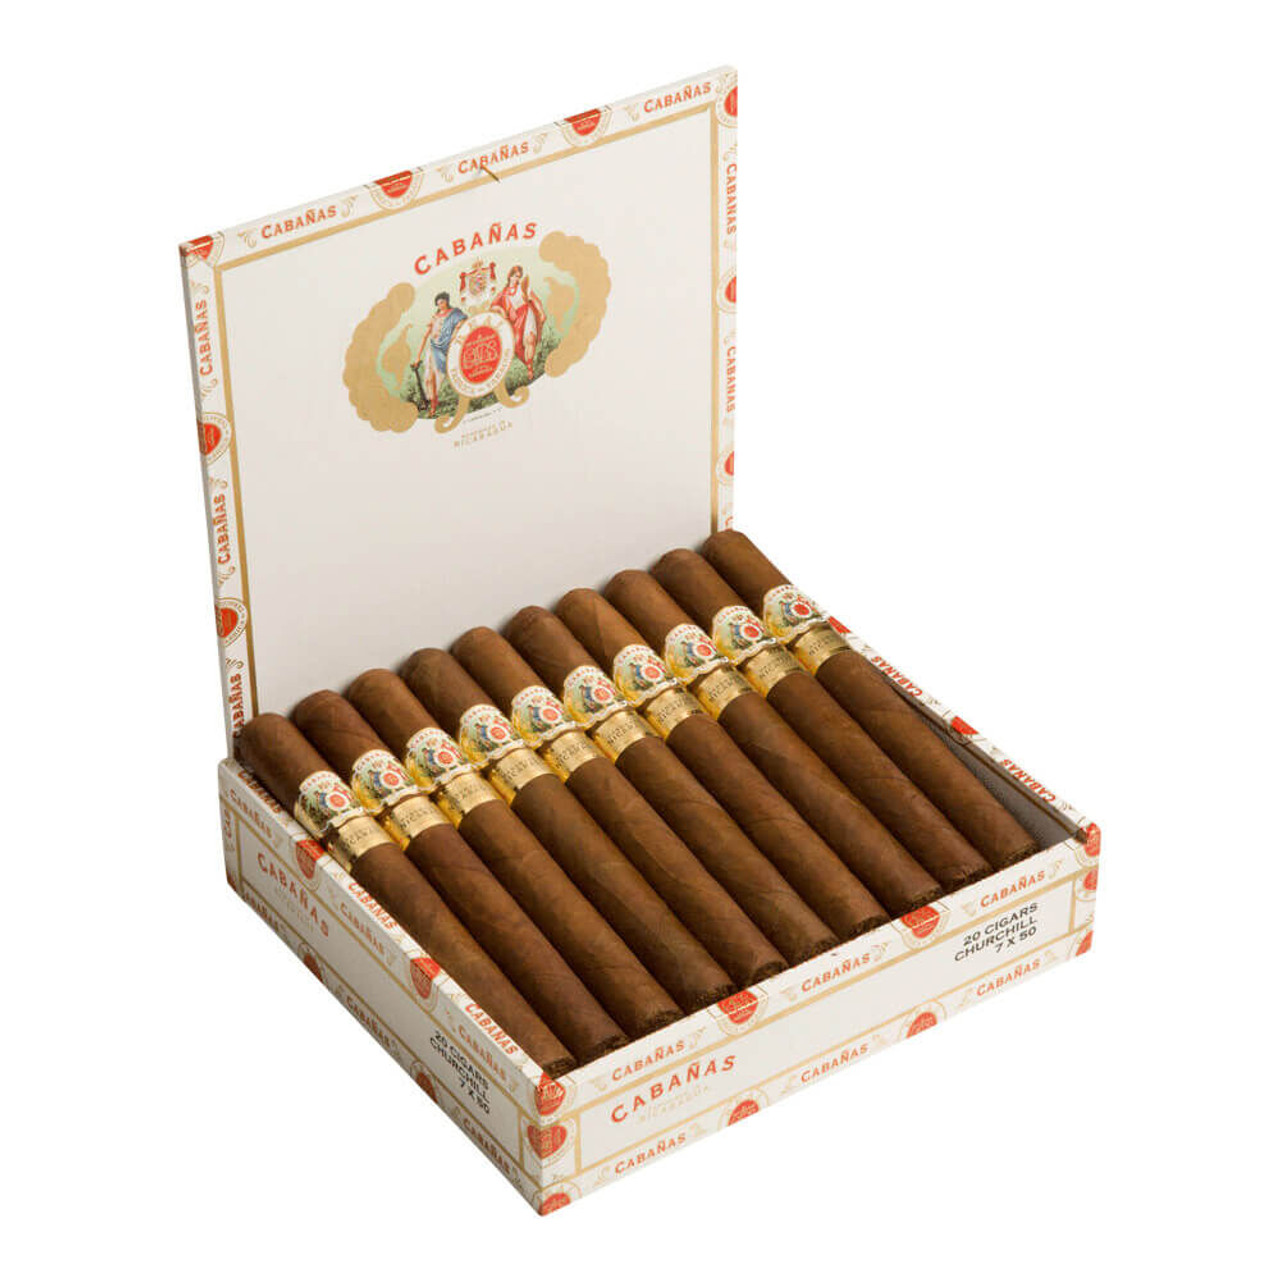 Cabanas Churchill Cigars - 7 x 50 (Box of 20)